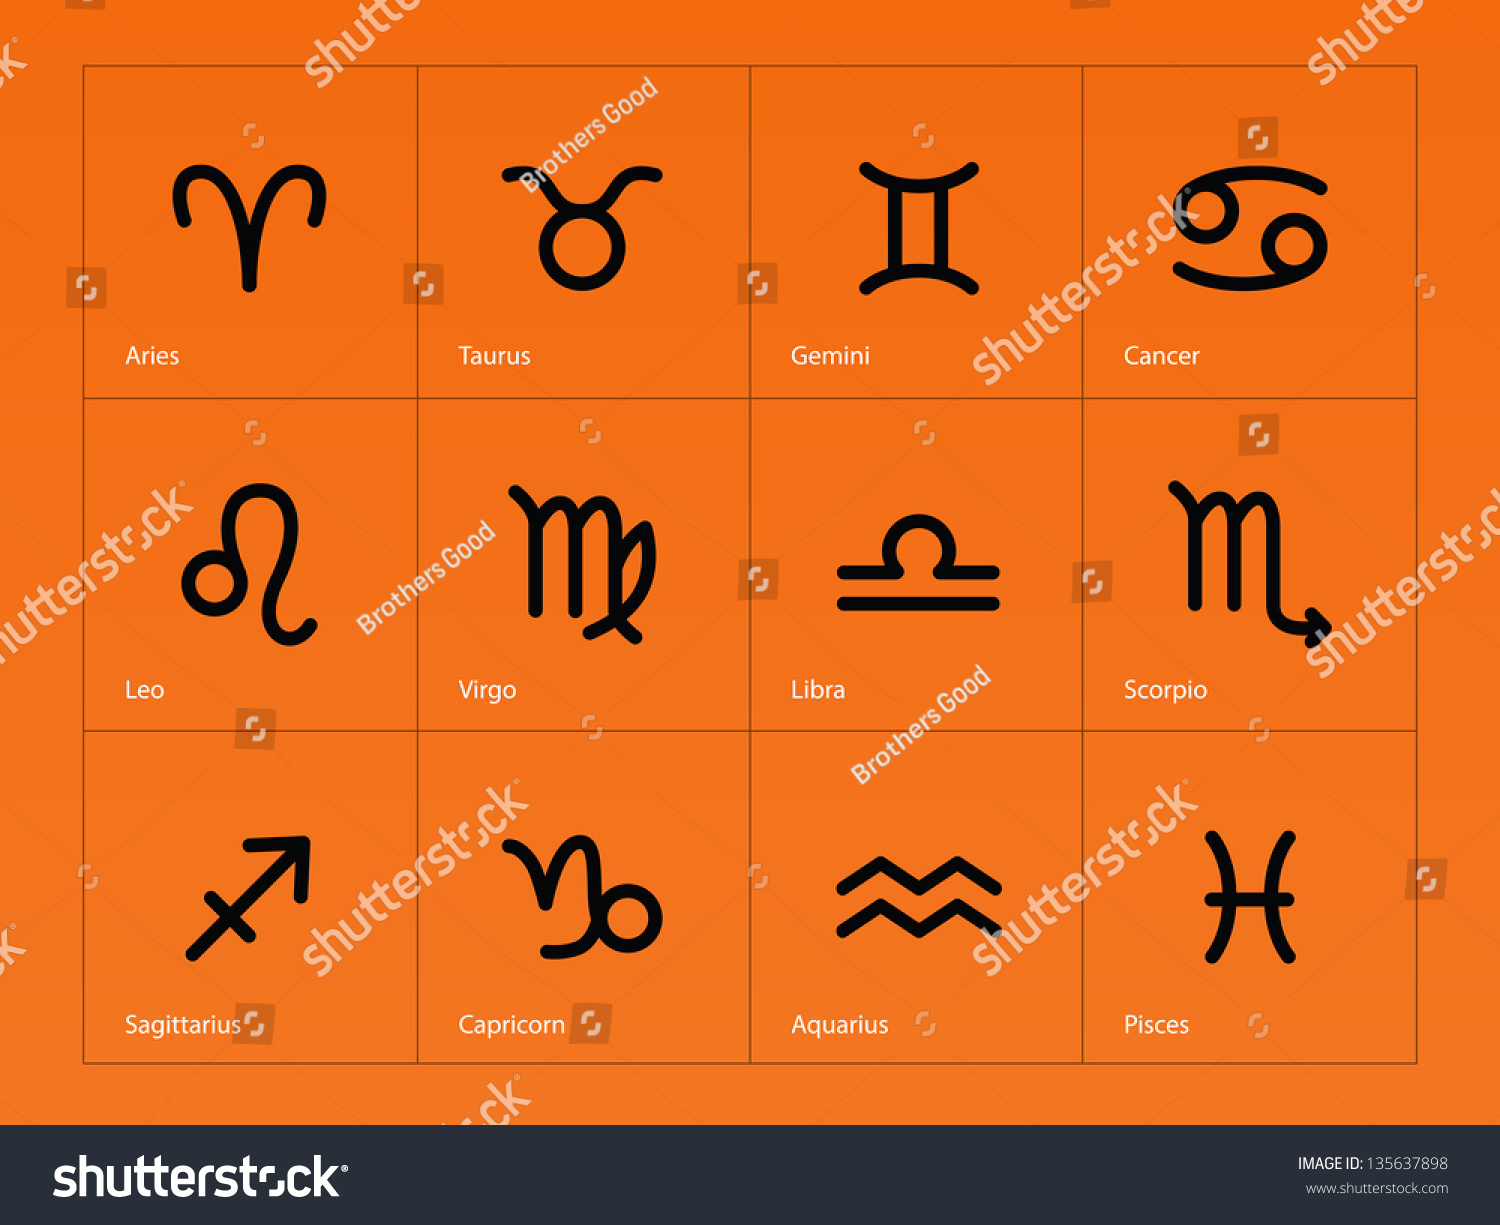 Zodiac icons on orange background. Vector illustration. #135637898